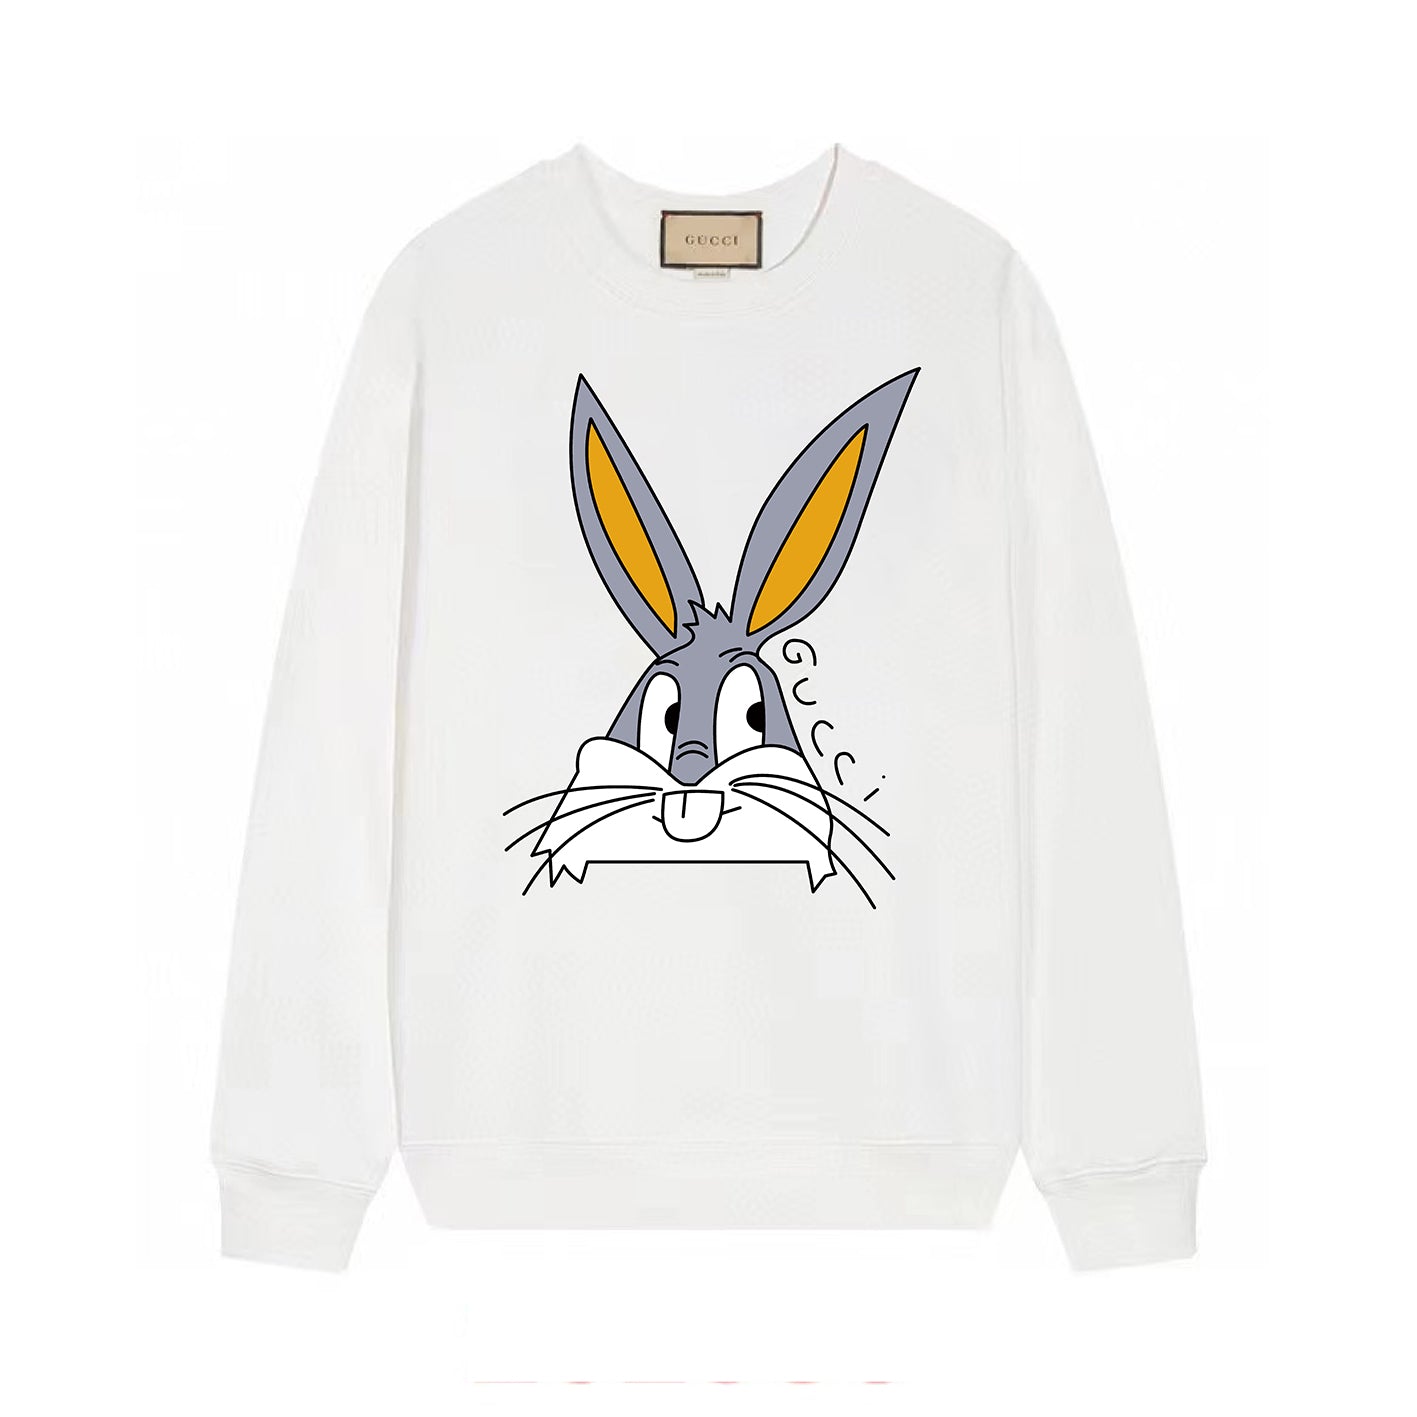 Bunny Print Sweatshirt